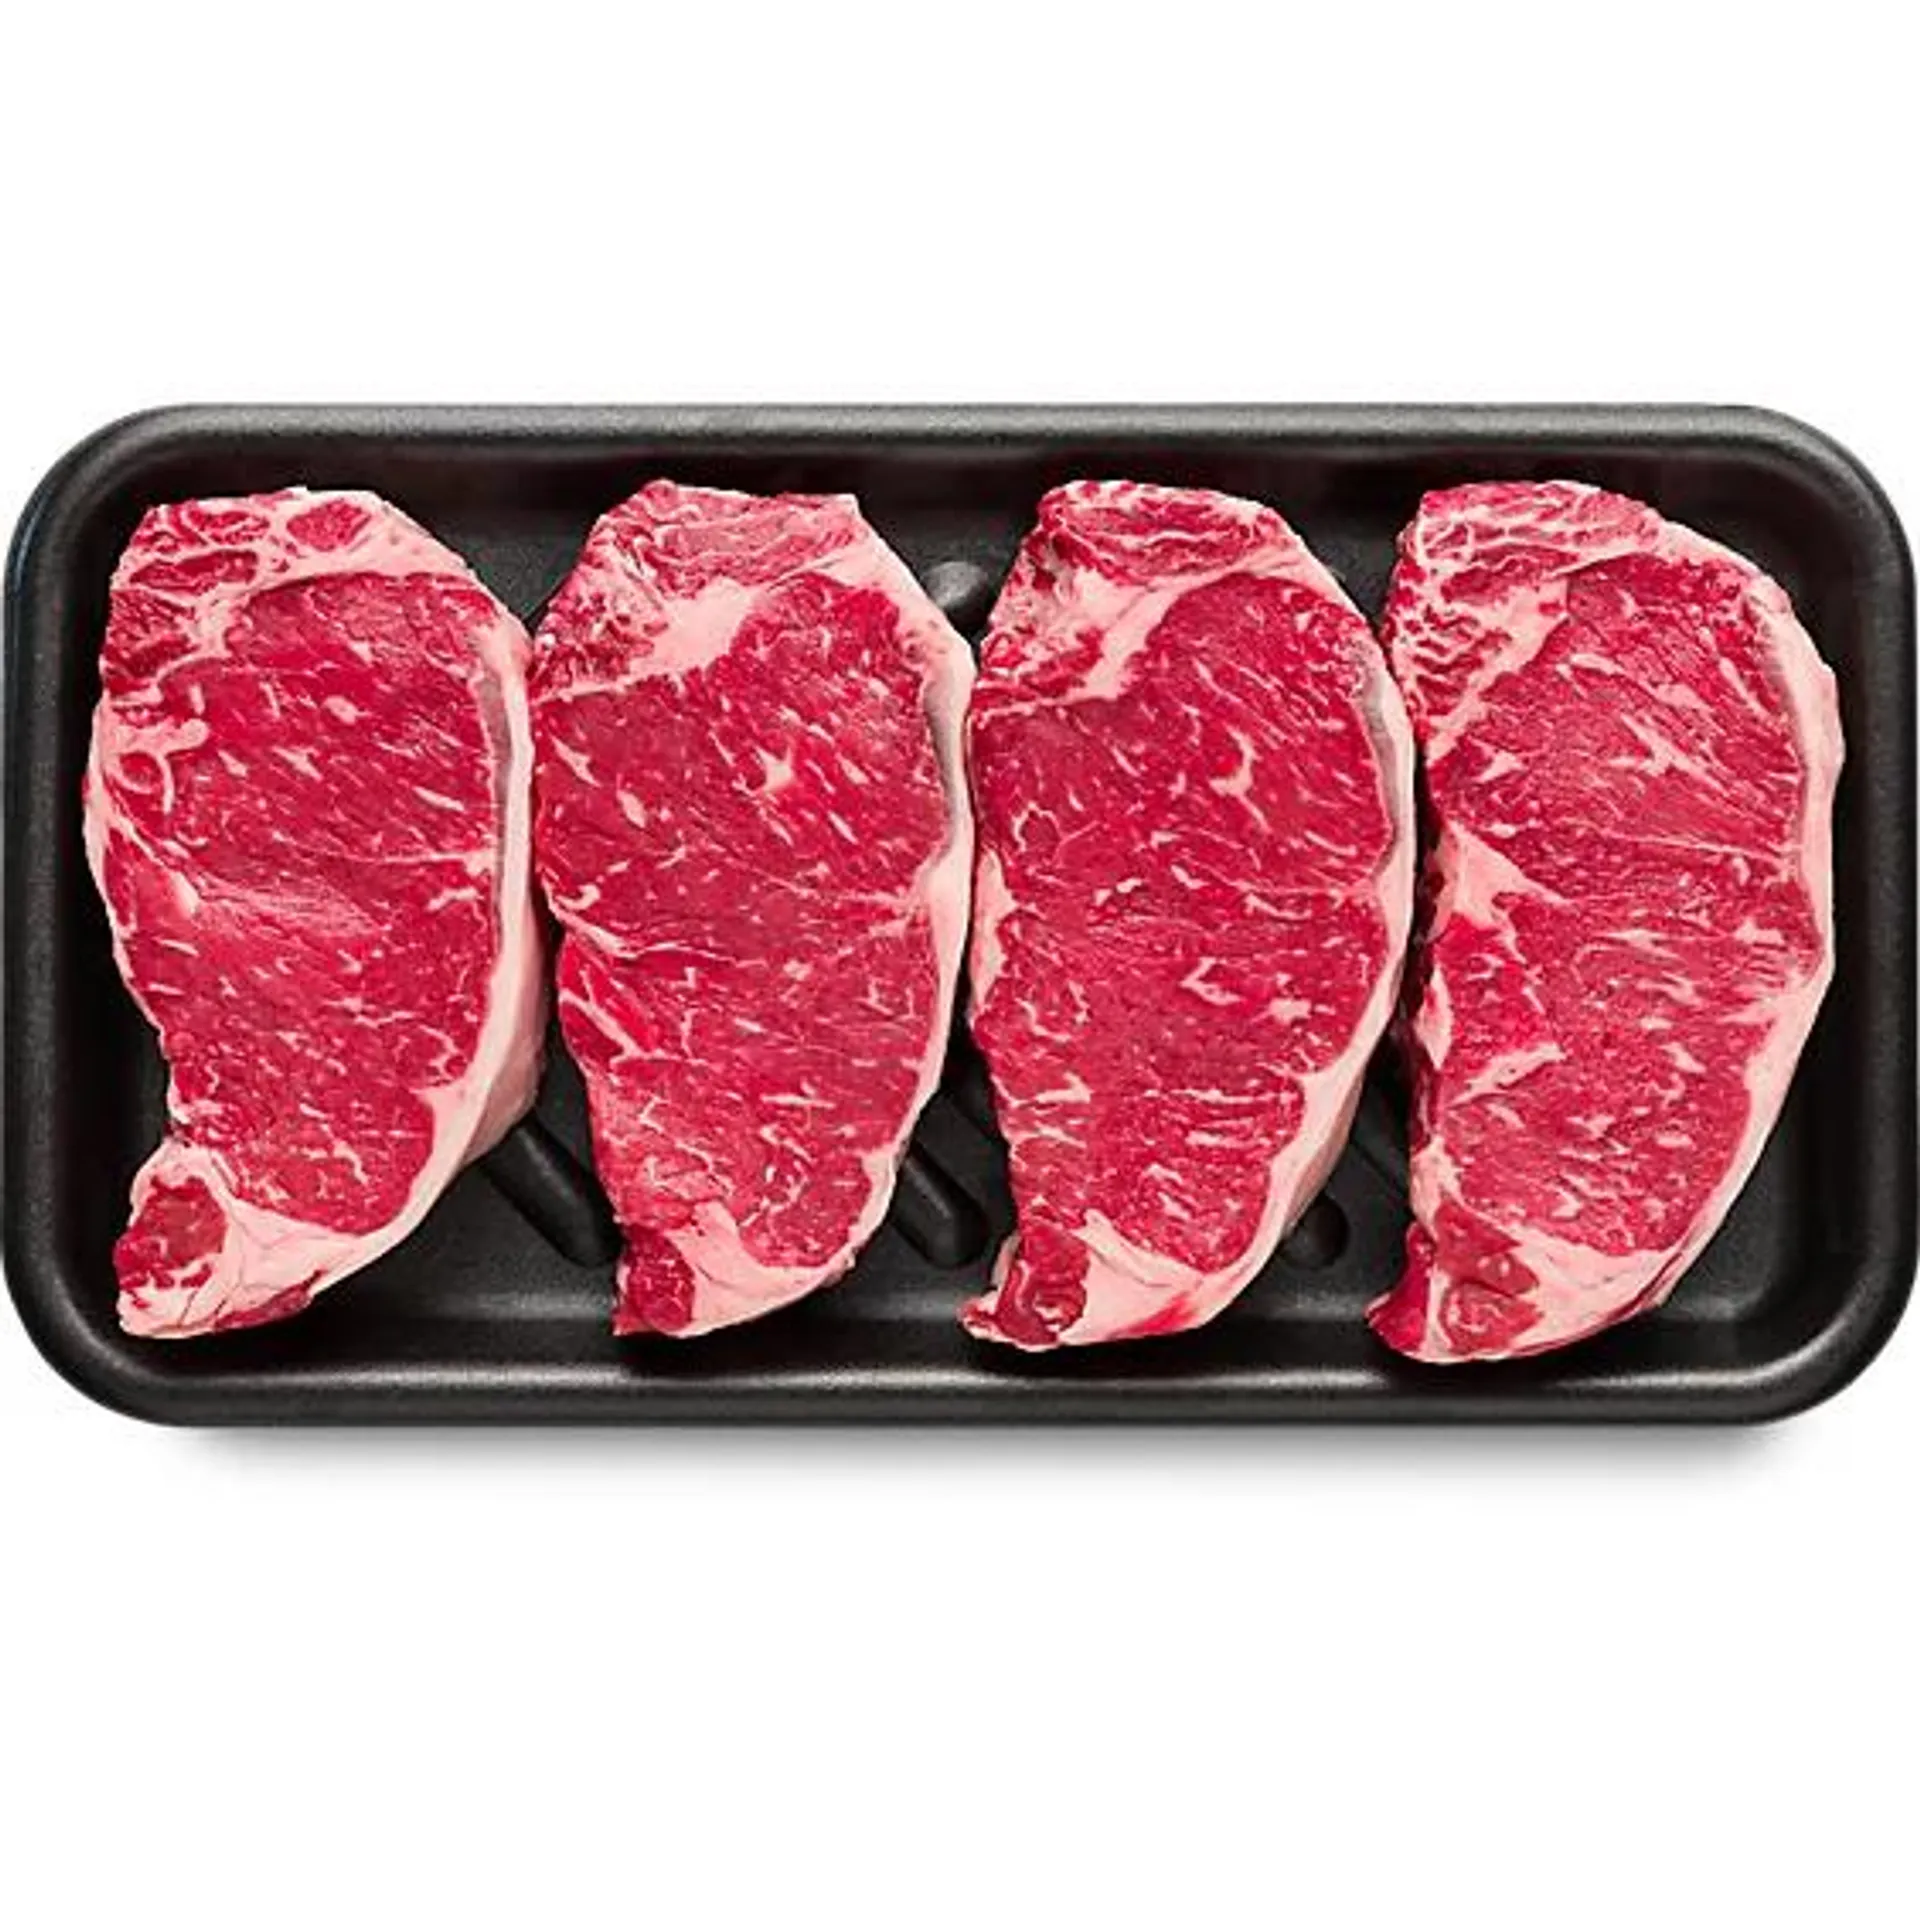 New York Boneless Steak USDA C... Value Pack - 3.5 Lb